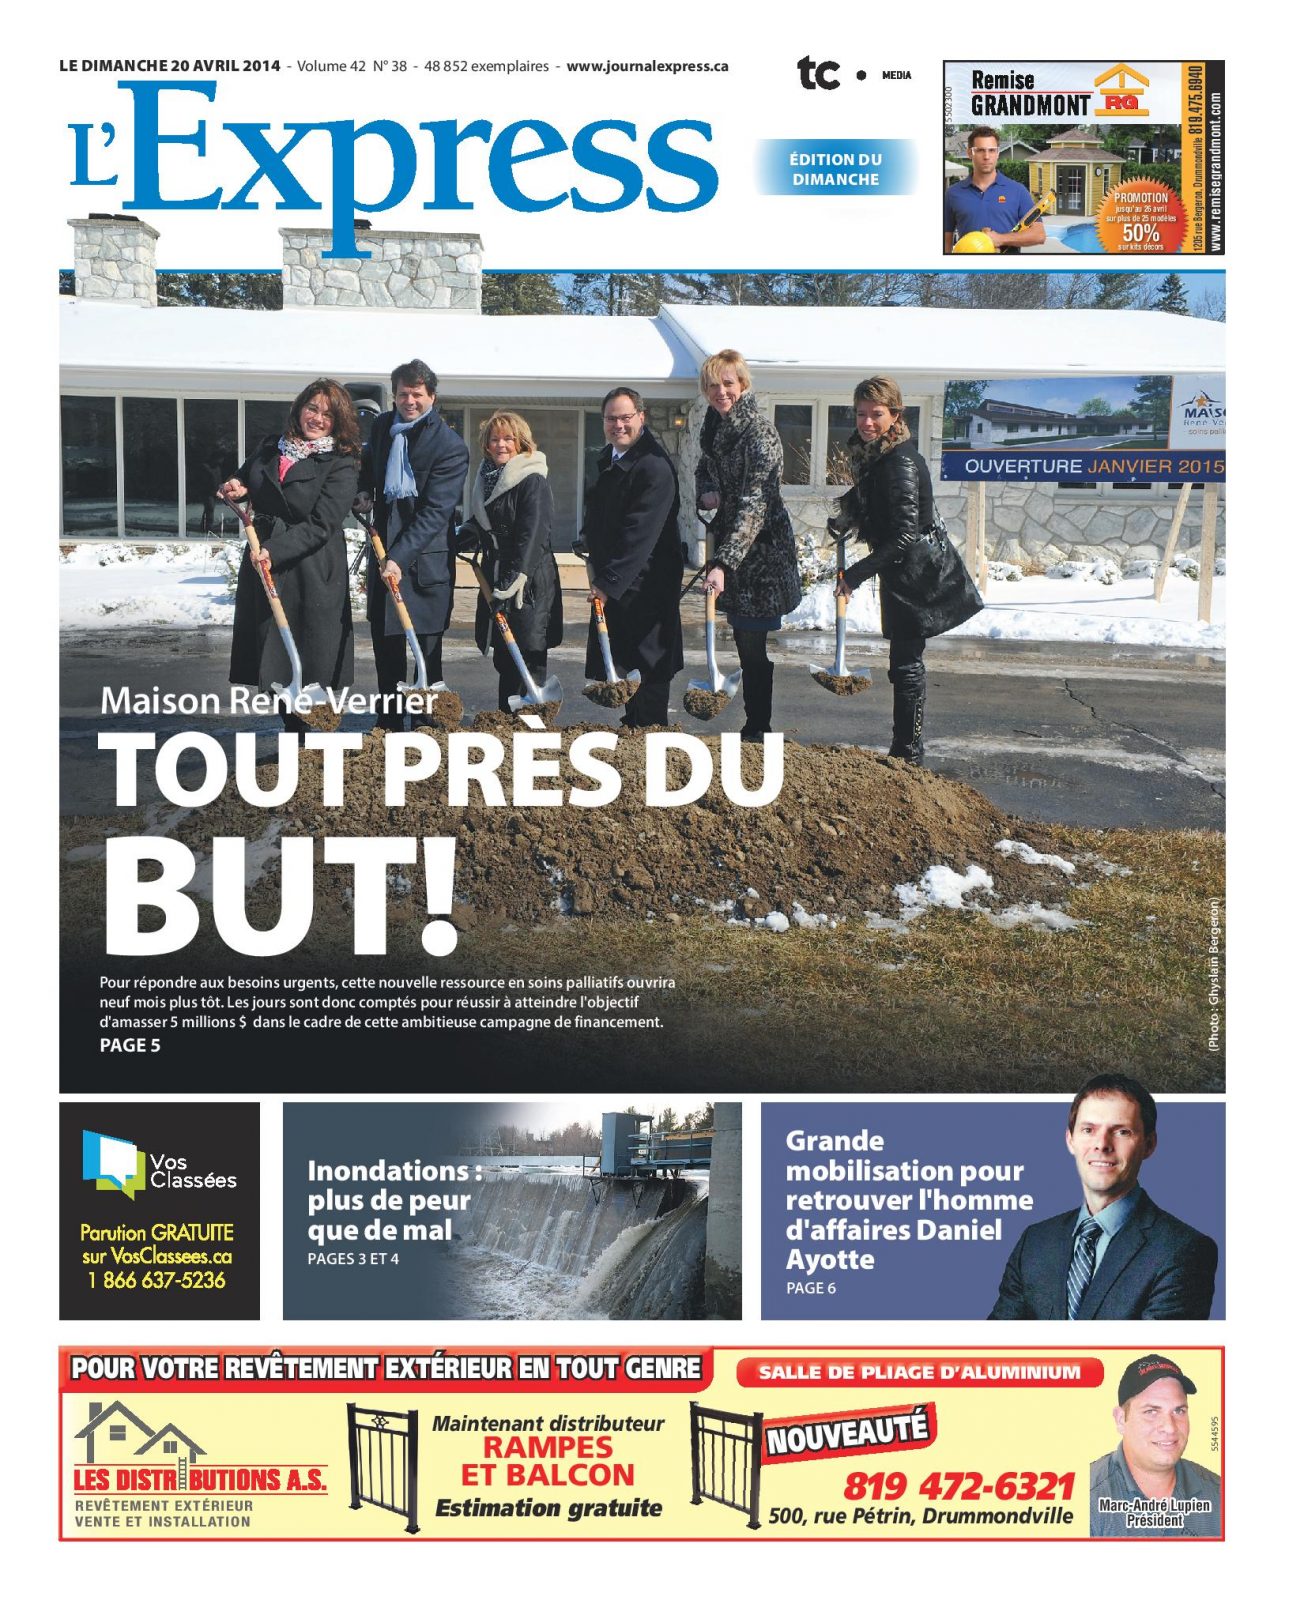 La une de L’Express du 20 avril 2014